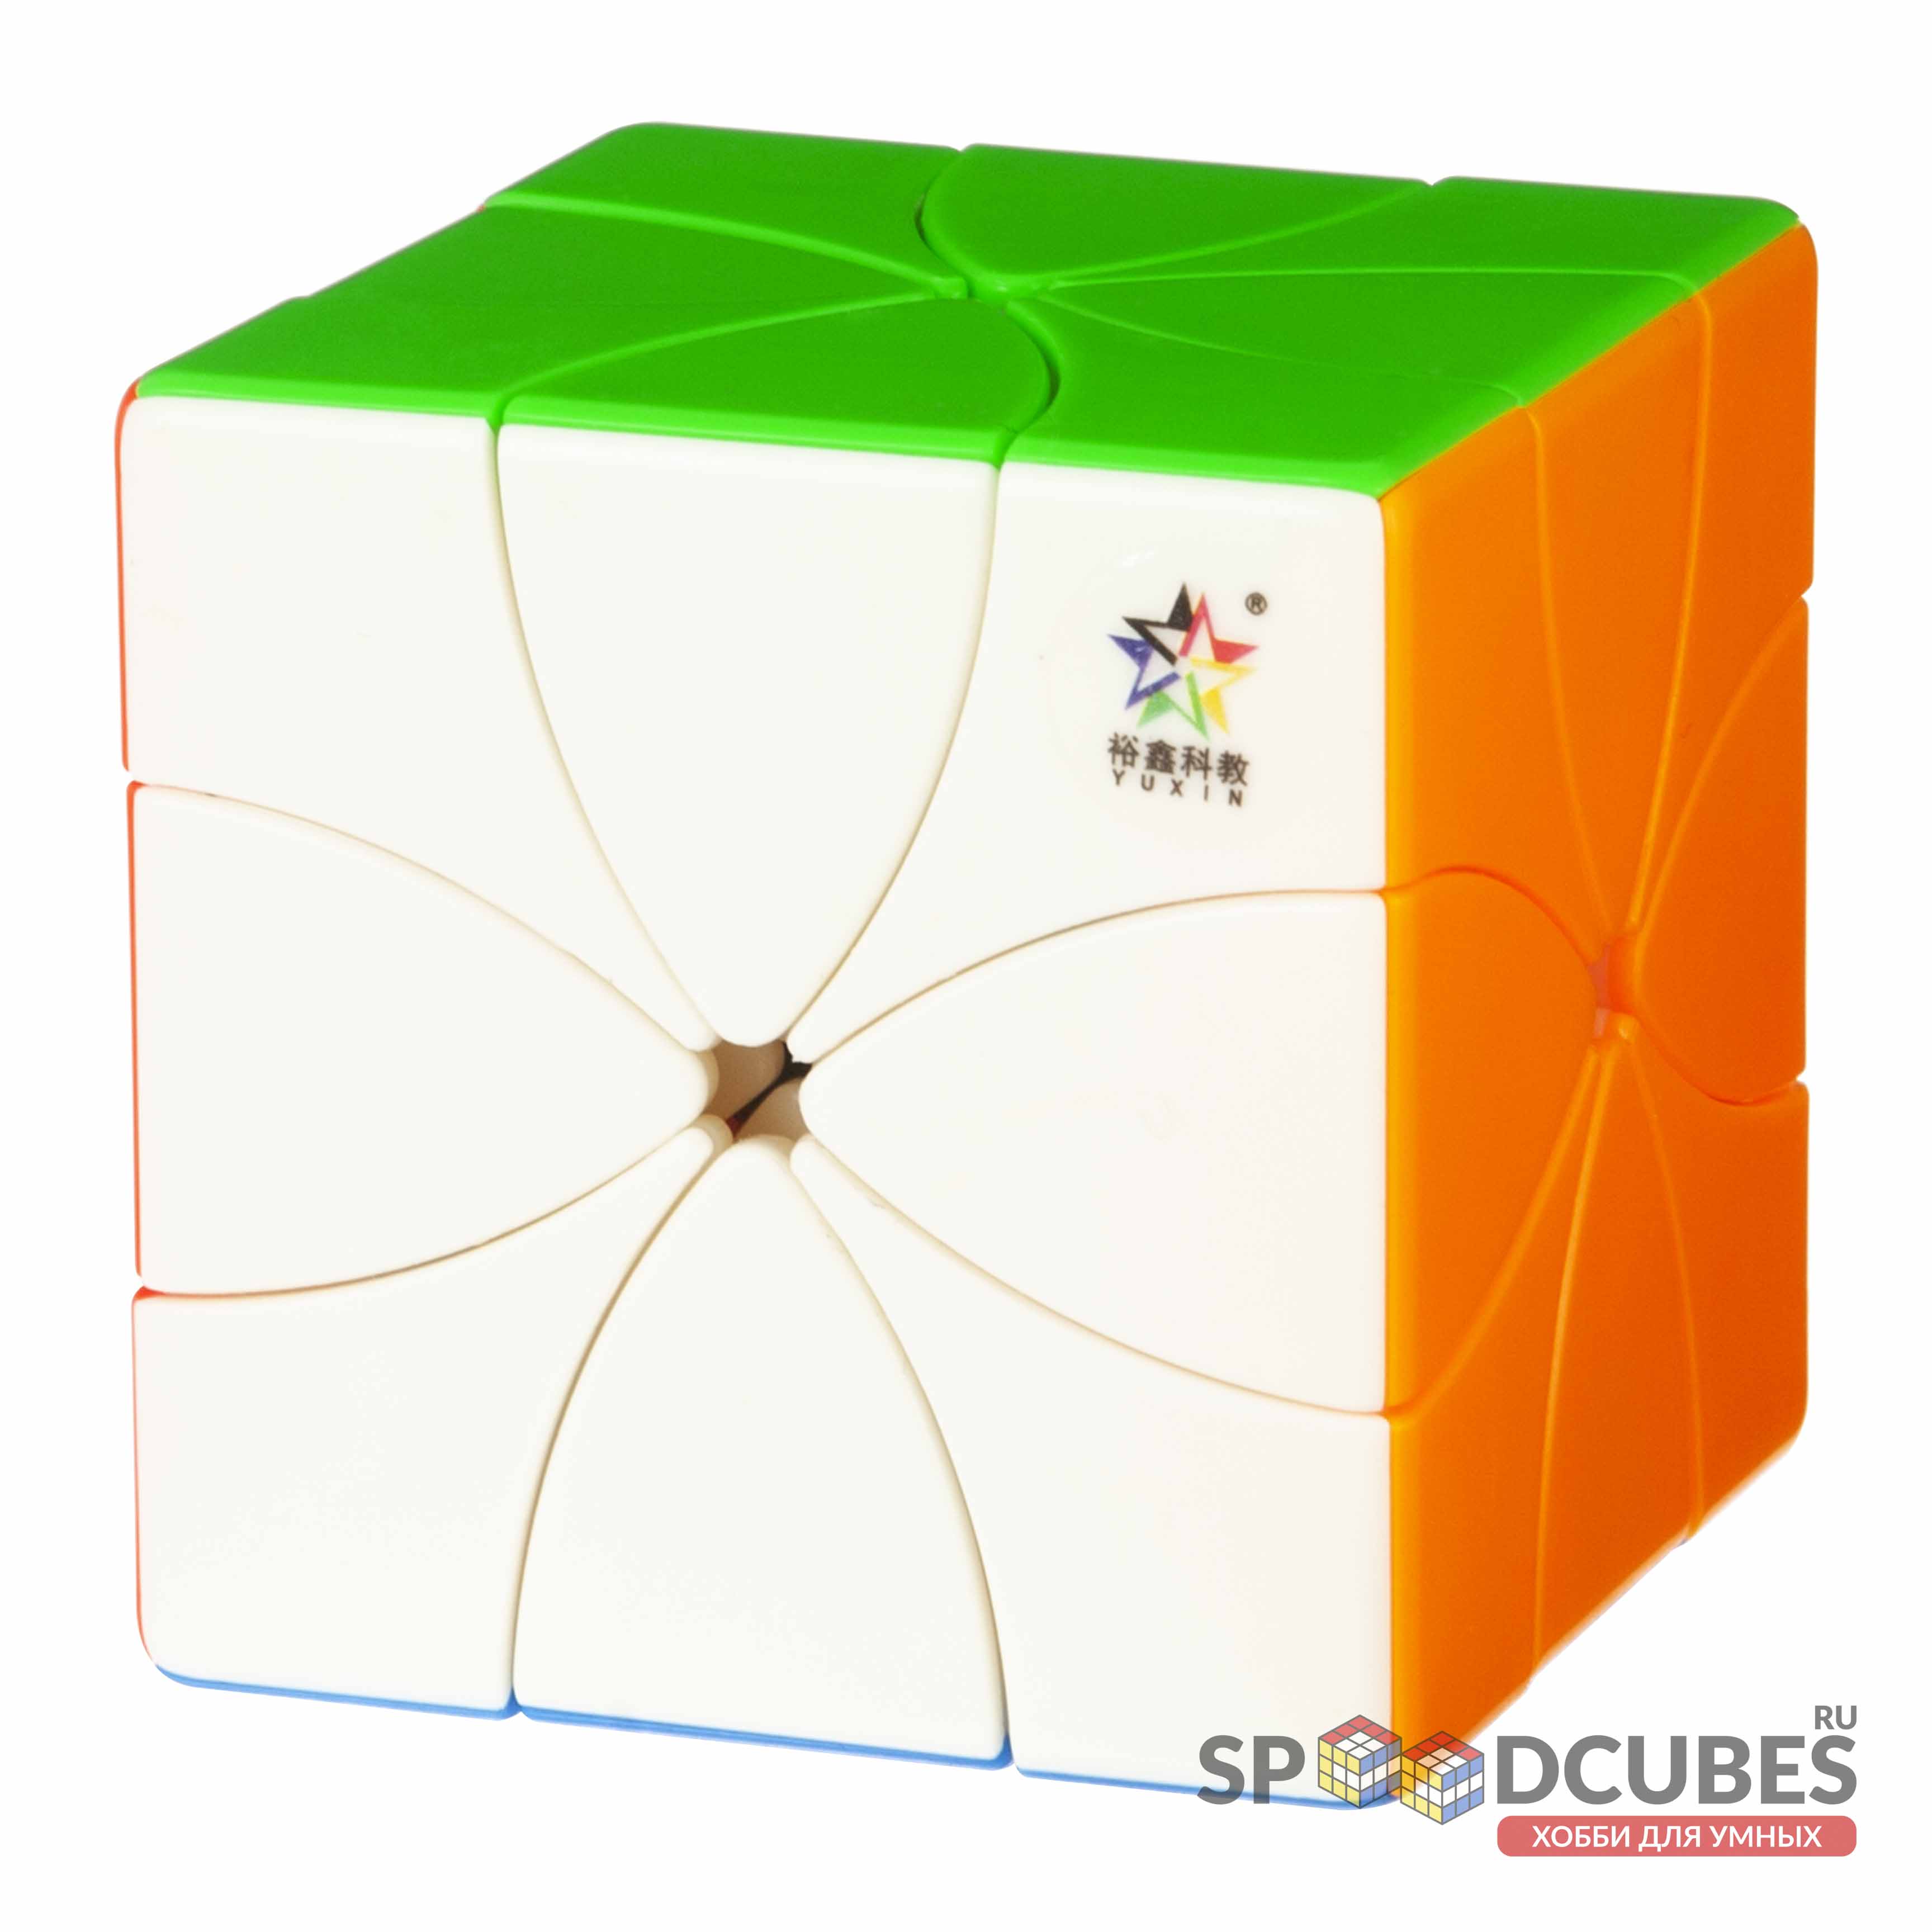 Yuxin 8 Petals M Cube